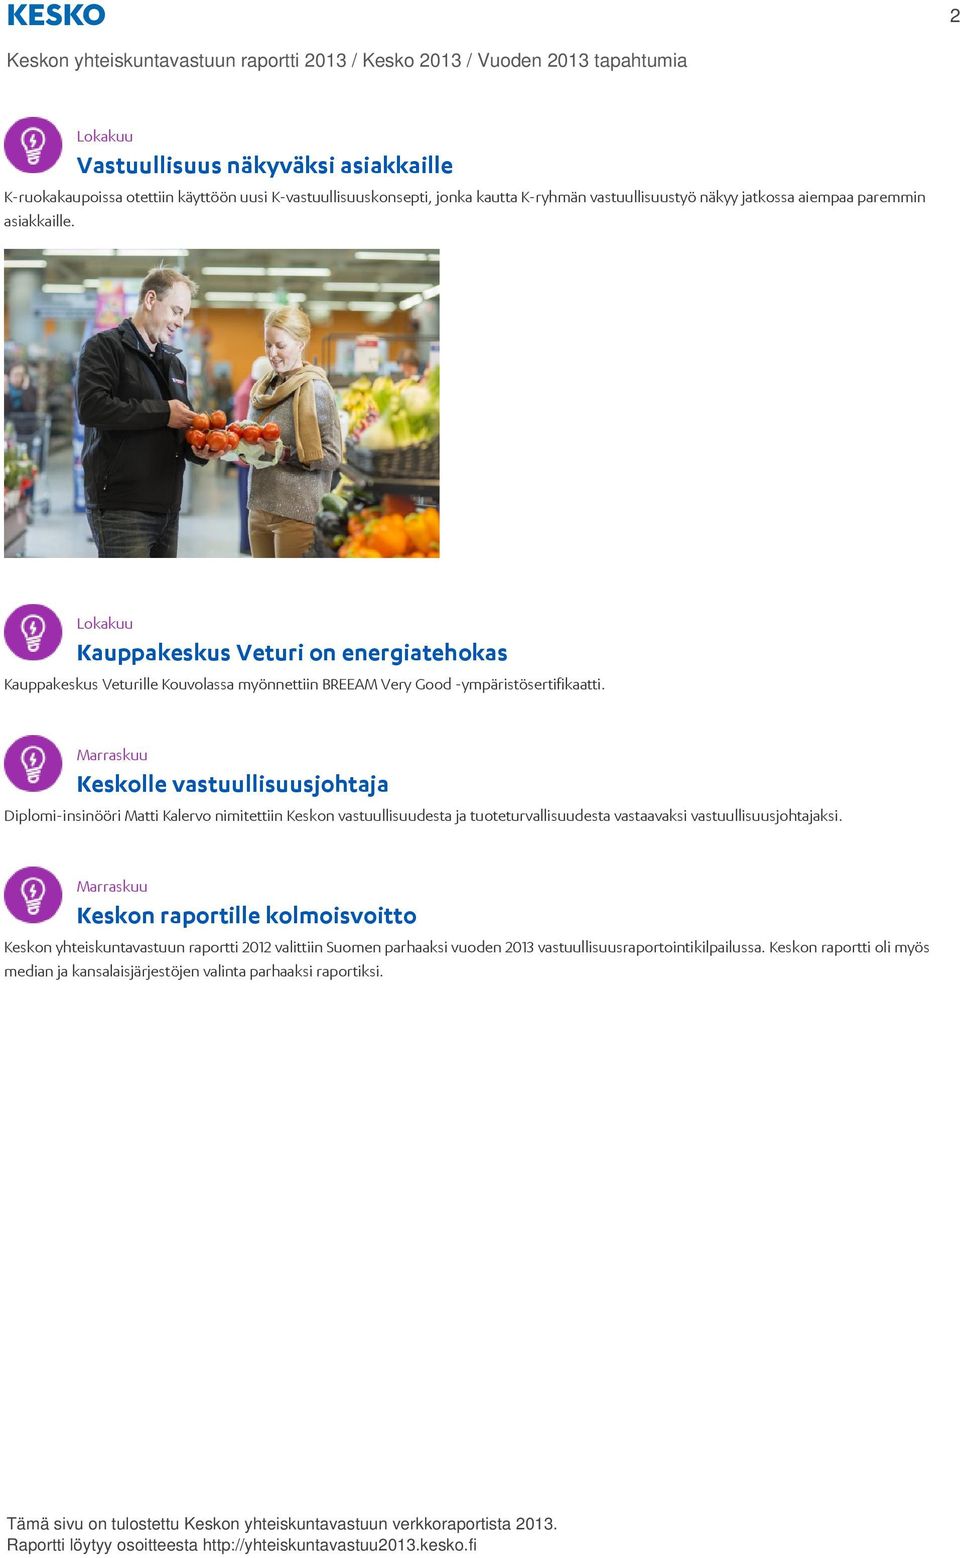 Lokakuu Kauppakeskus Veturi on energiatehokas Kauppakeskus Veturille Kouvolassa myönnettiin BREEAM Very Good -ympäristösertifikaatti.